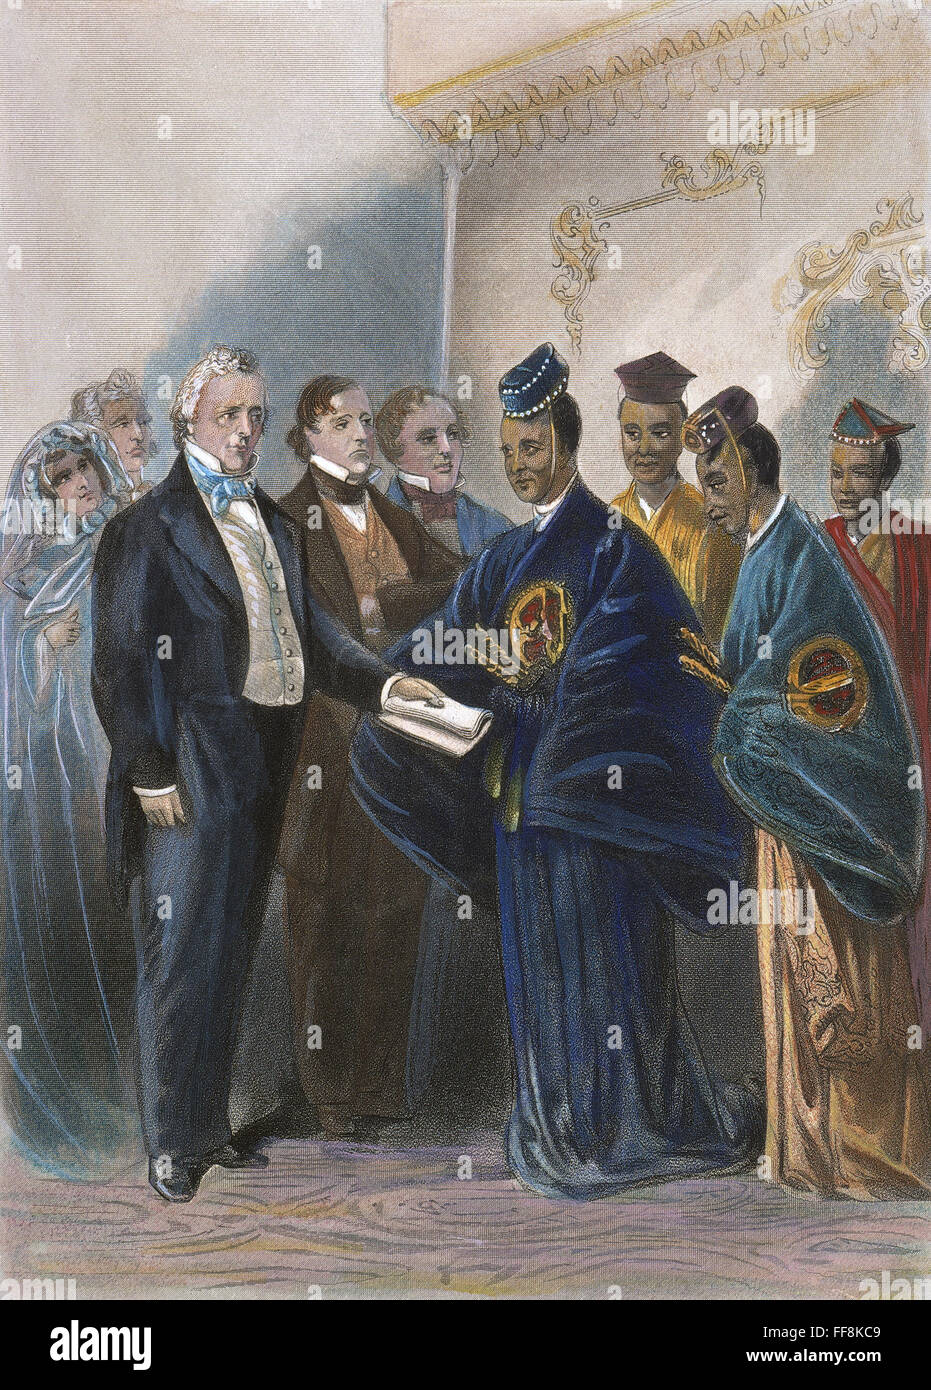 BUCHANAN : ambassadeurs. /Nla réception à la Maison Blanche par le président James Buchanan, 17 mai 1860, pour visiter les ambassadeurs japonais : gravure contemporaine américaine. Banque D'Images